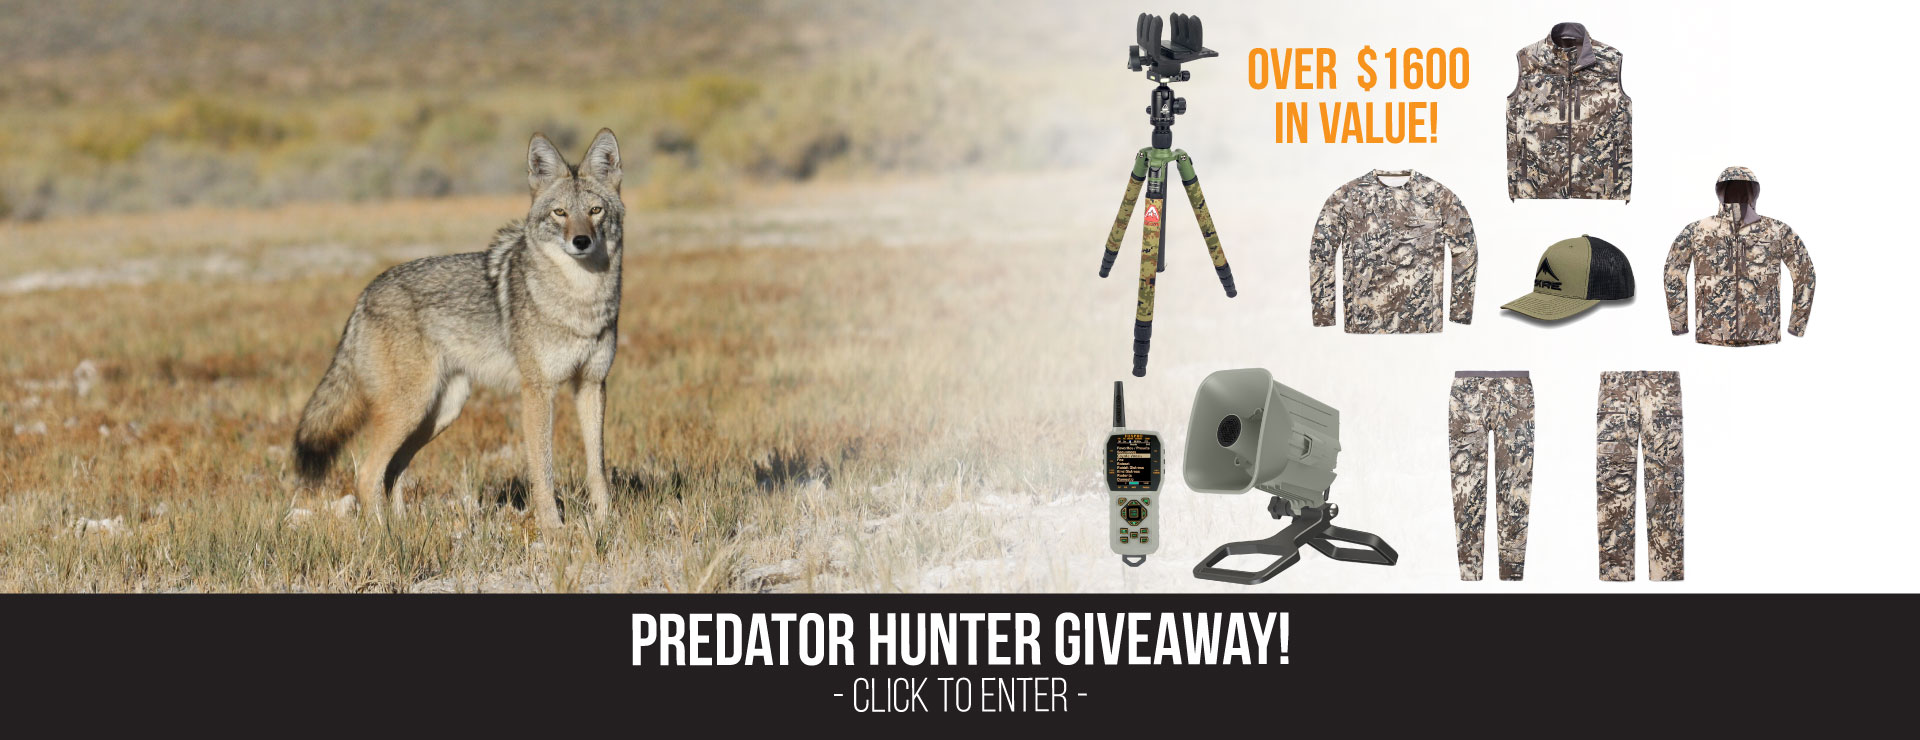 Predator Hunter Giveaway